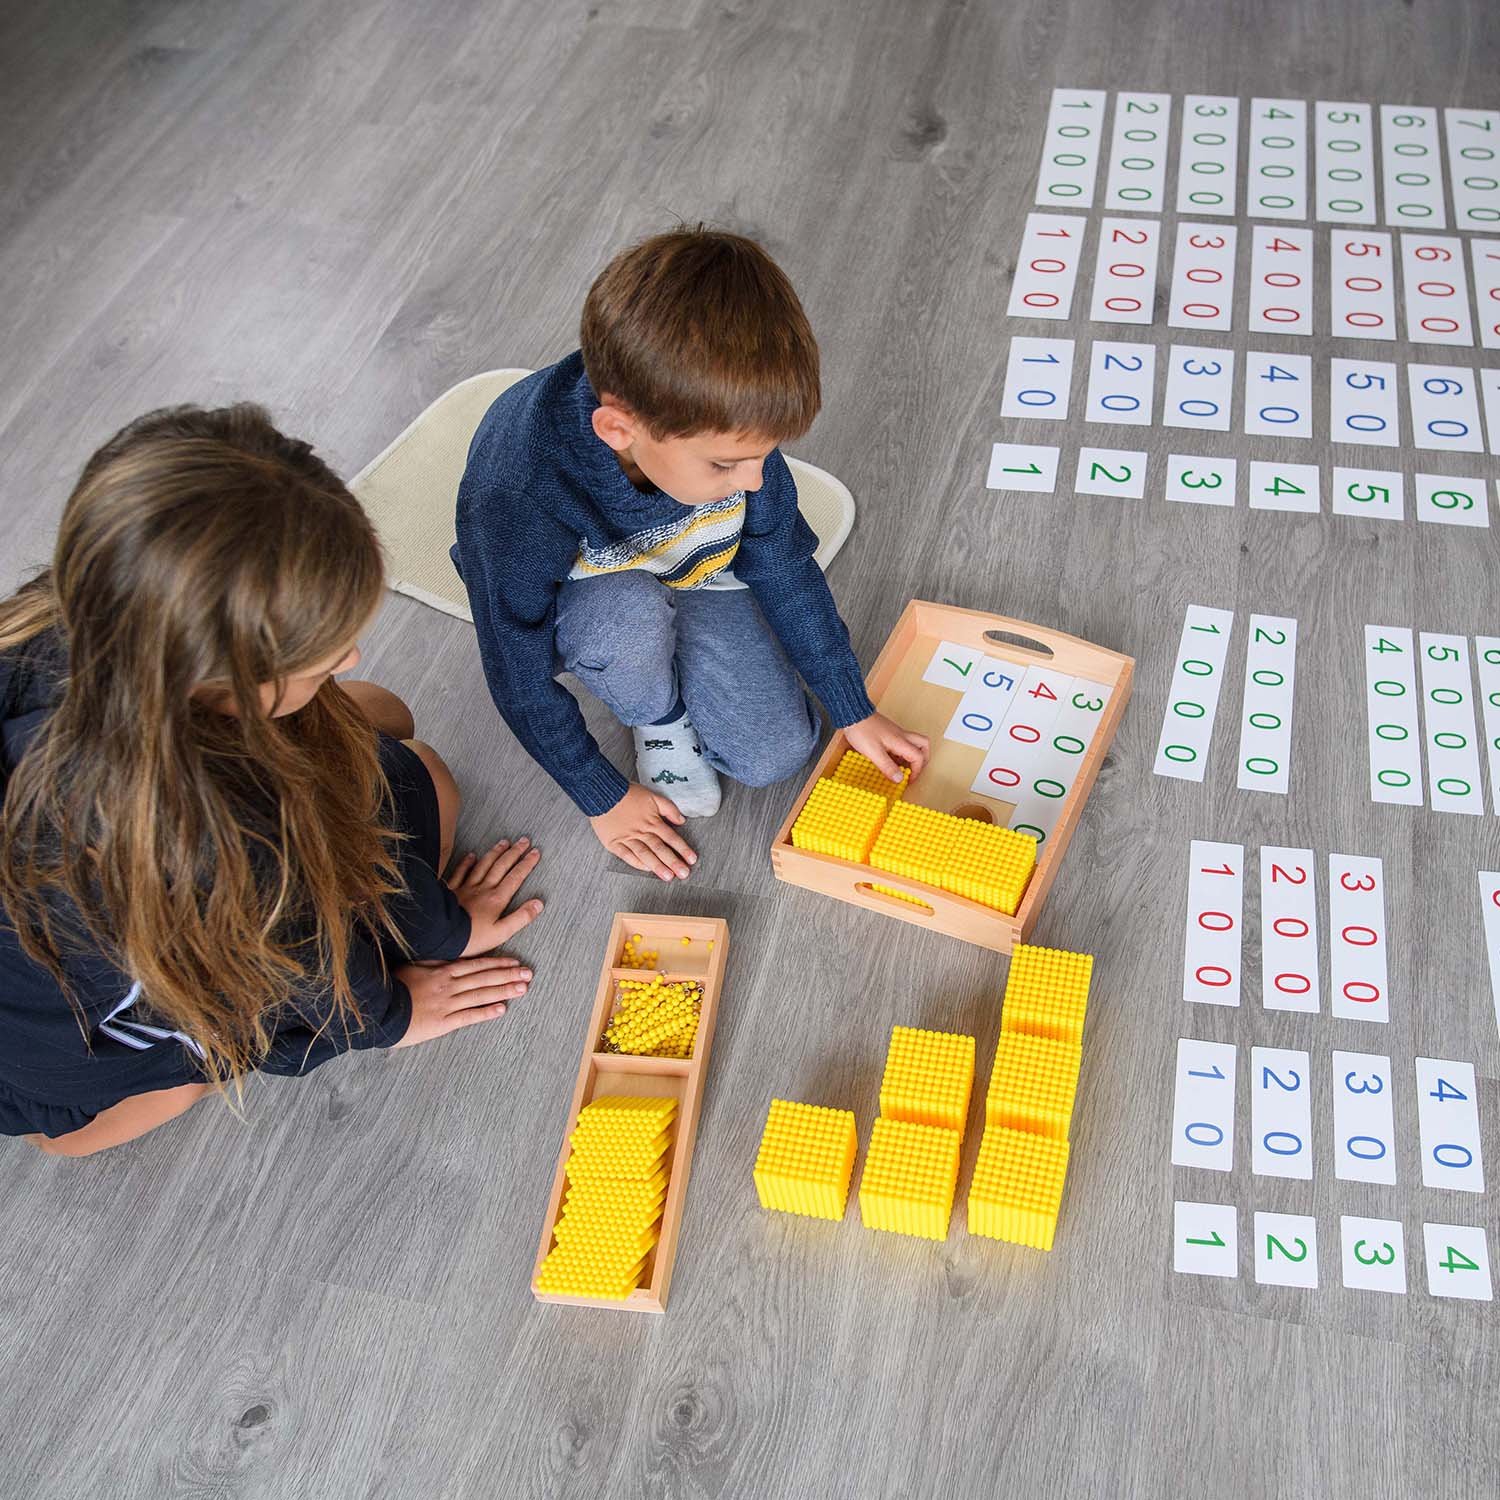 Jeux éducatif montessori : Matériel Montessori 1, 2, 3 et 4 ans